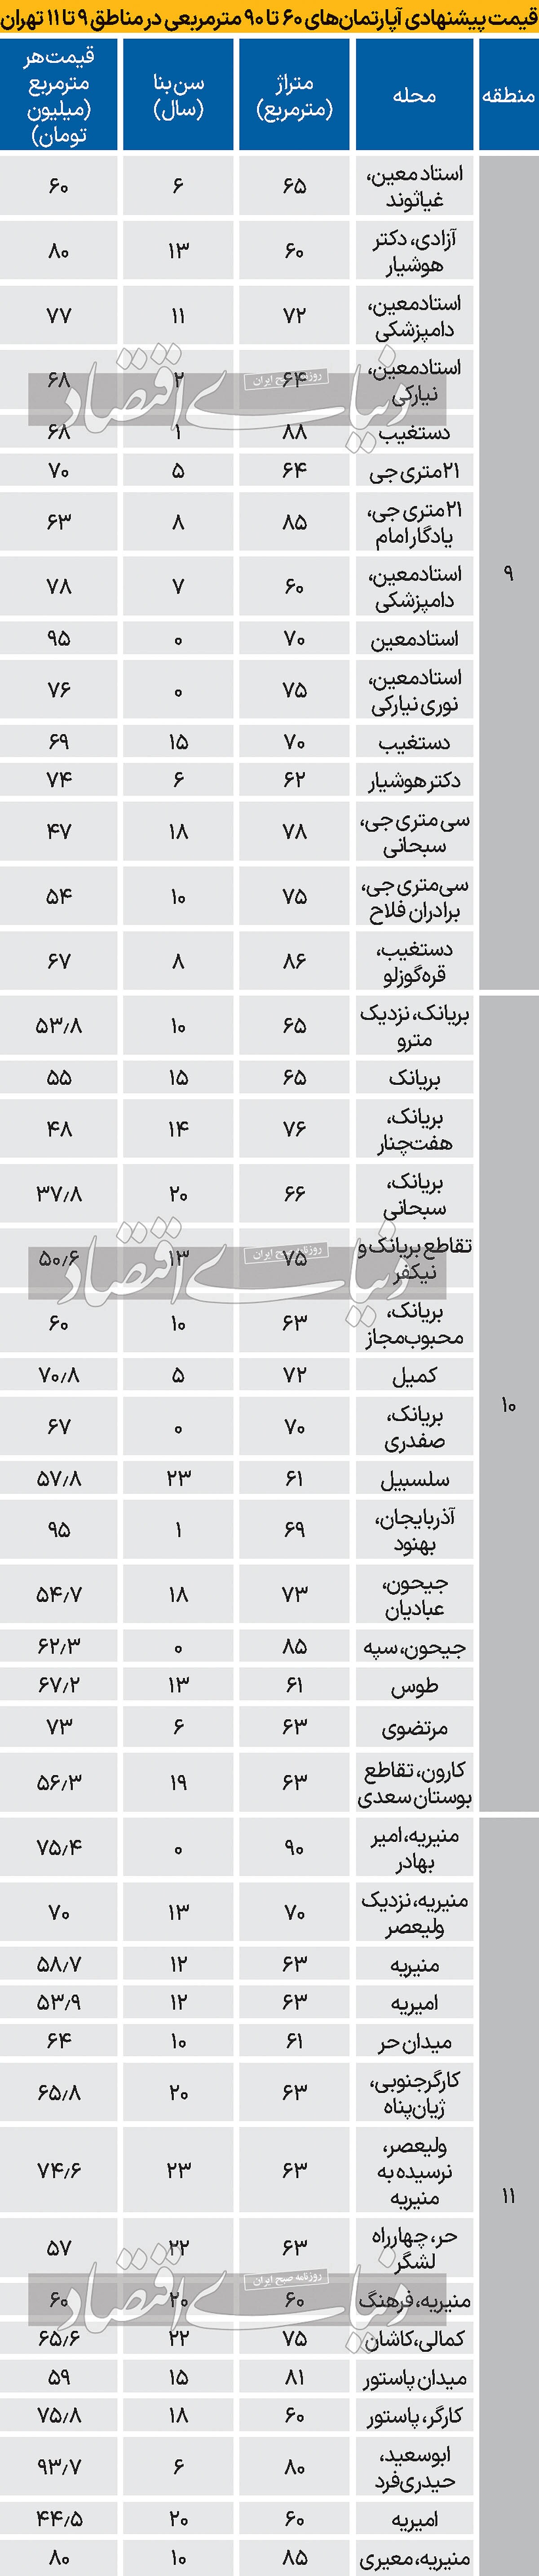 جدول قیمت خرید آپارتمان در مناطق ۹ تا ۱۱ تهران/ دامپزشکی متری ۷۸ میلیون تومان